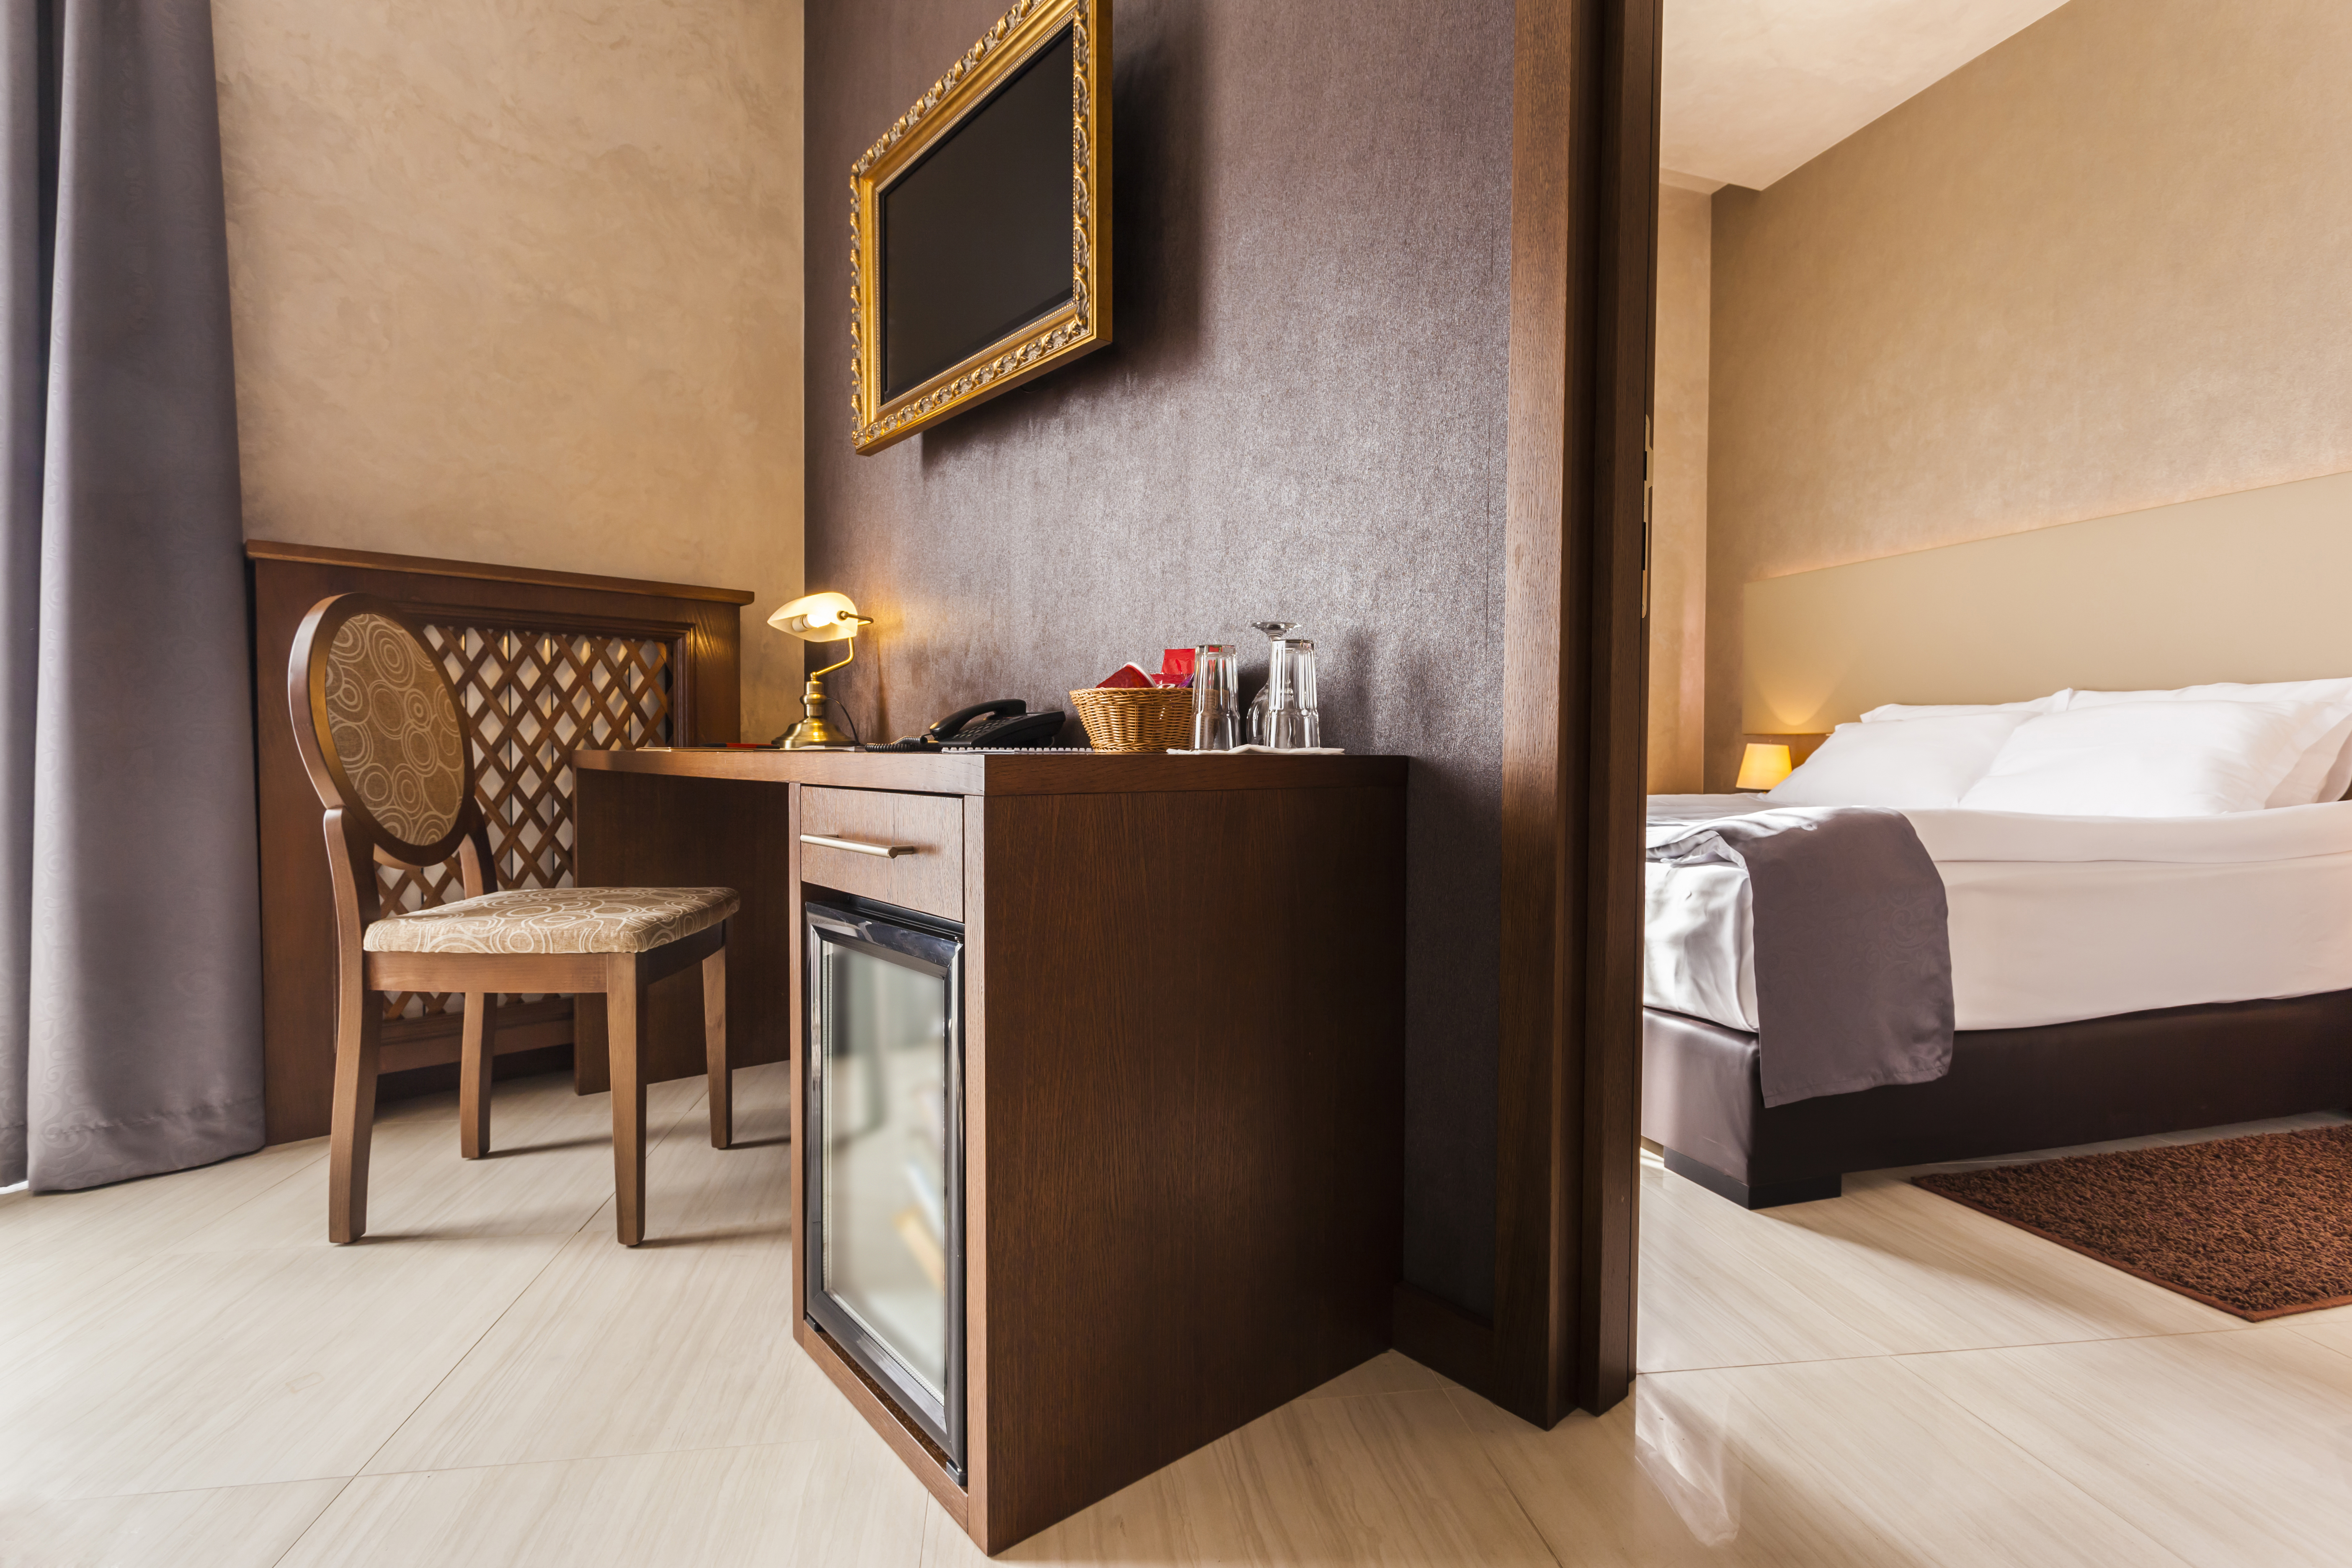 Interior de habitación de hotel de lujo con minibar en tonos marrones. | Fuente: Shutterstock